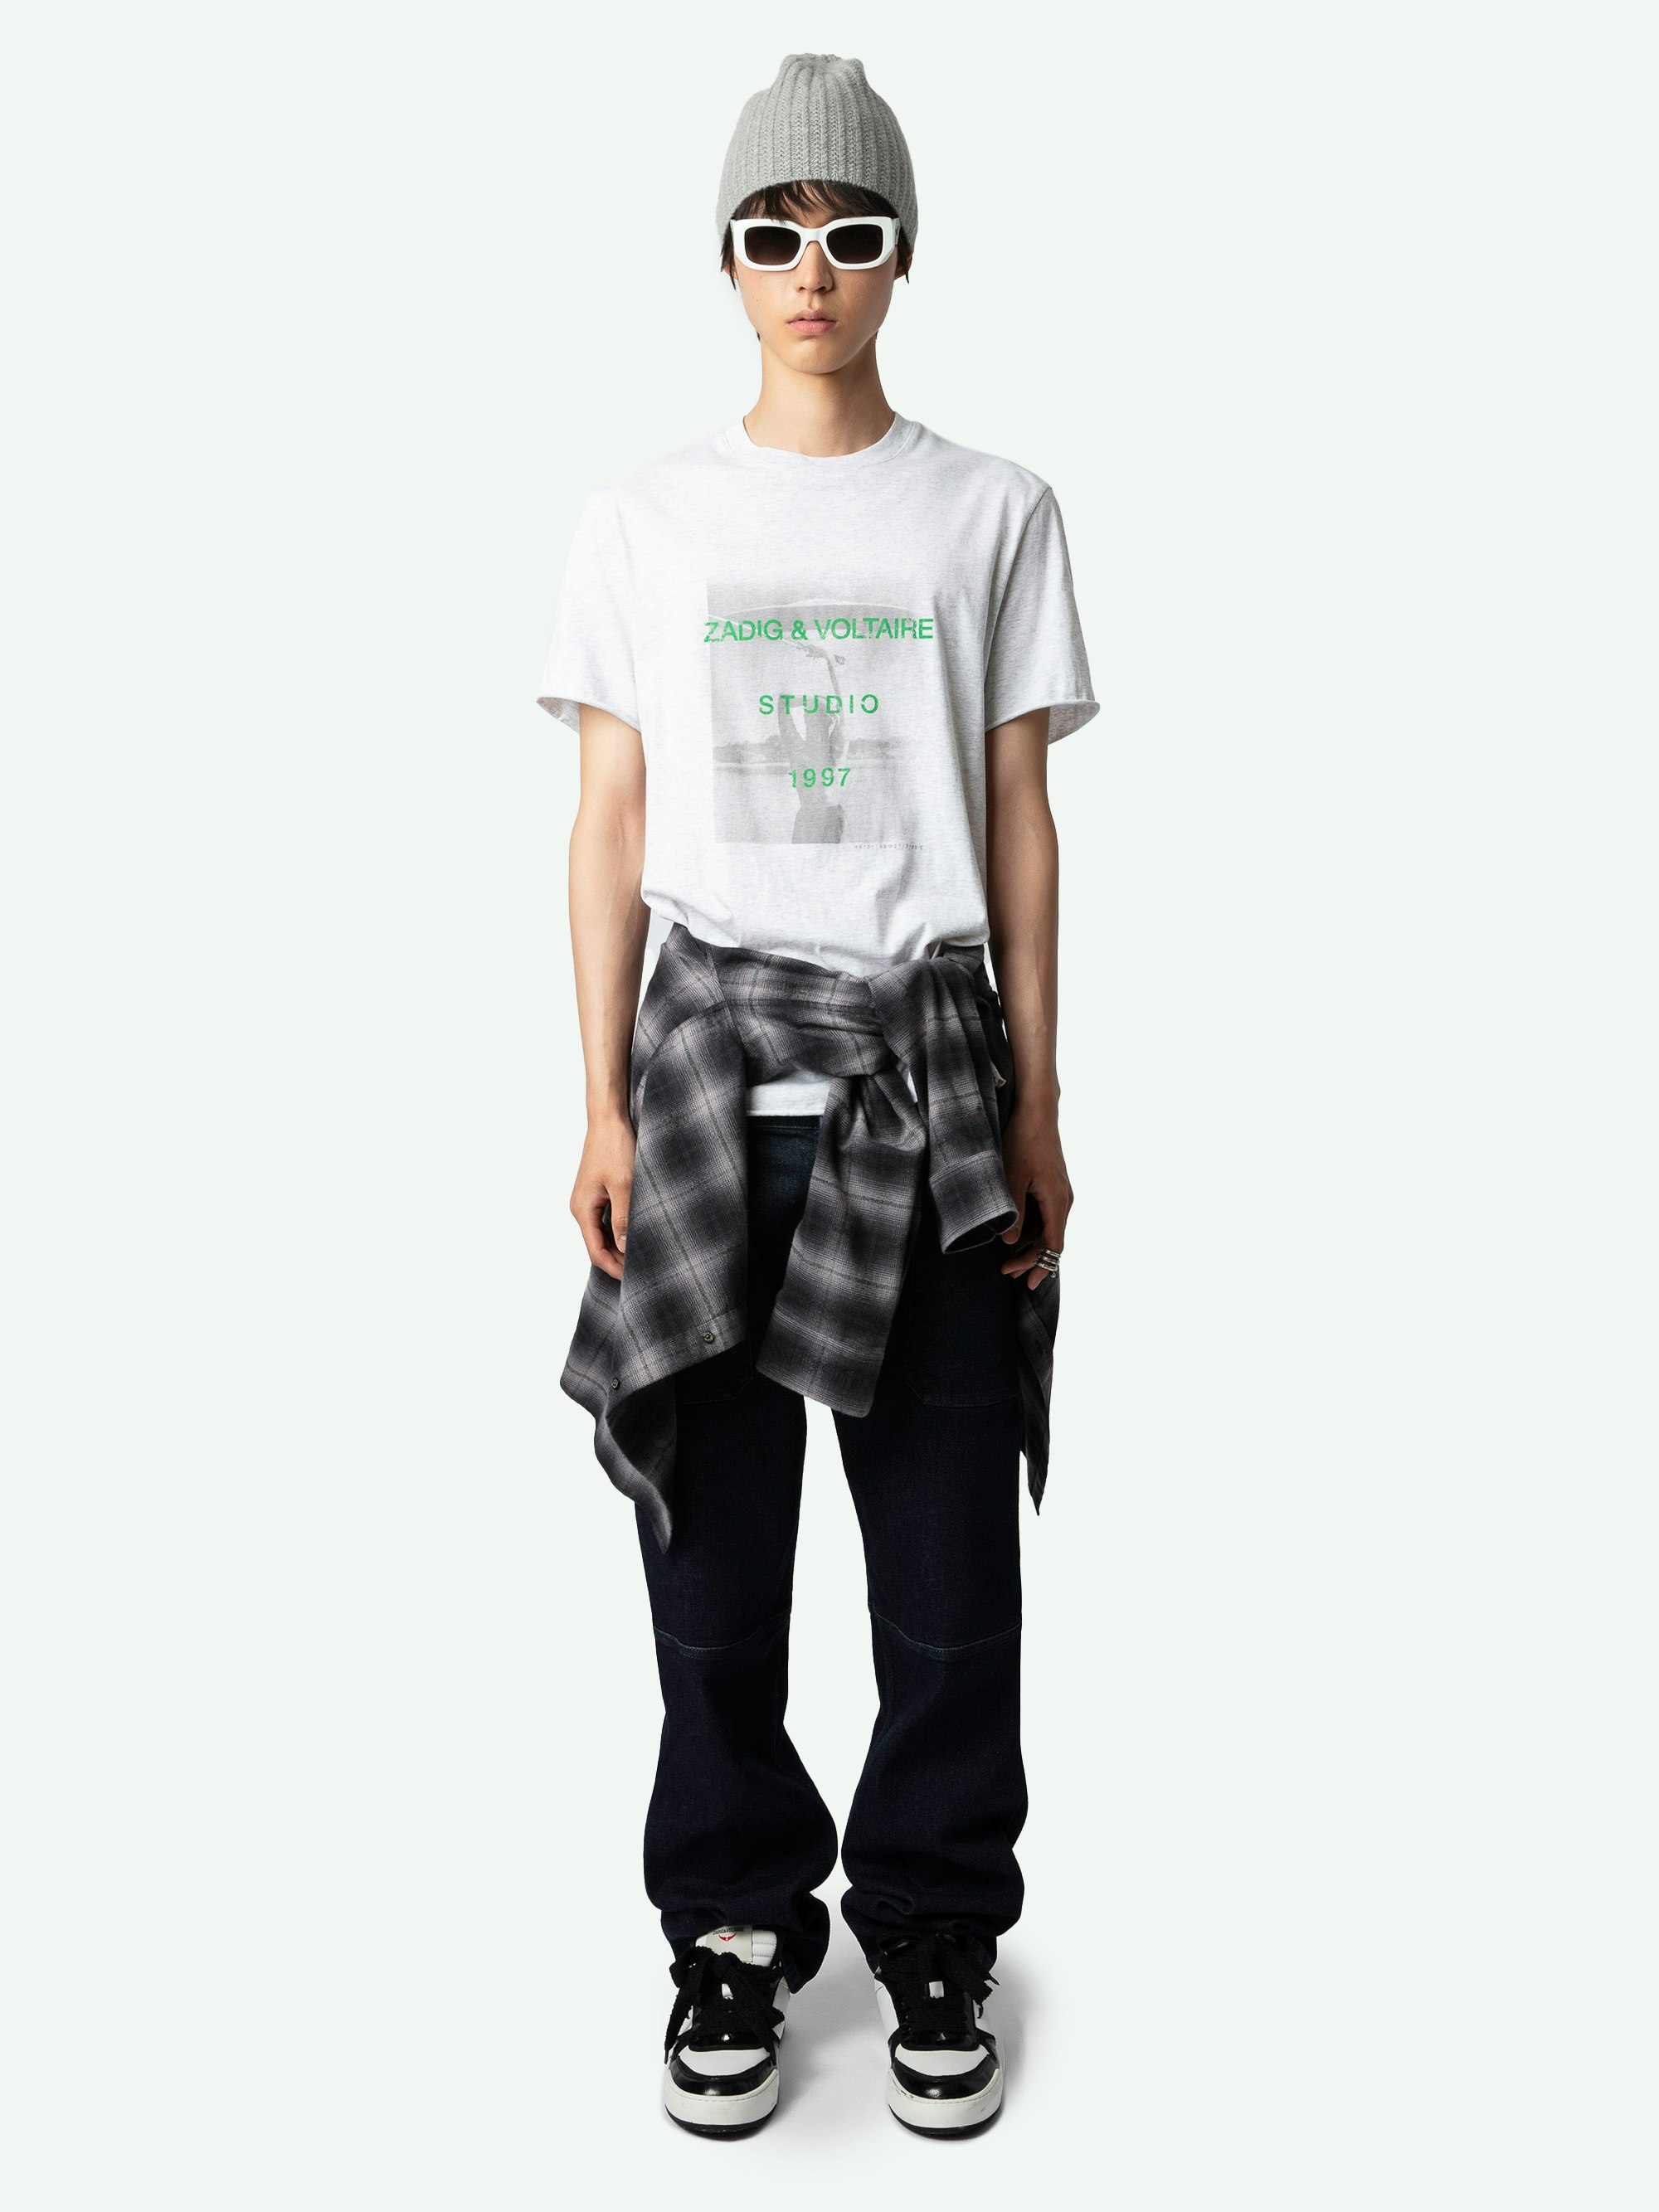 T-Shirt Ted Fotoprint - Kurzärmeliges, graumeliertes T-Shirt aus Bio-Baumwolle mit Studio-Woman-Fotoprint auf der Vorderseite.